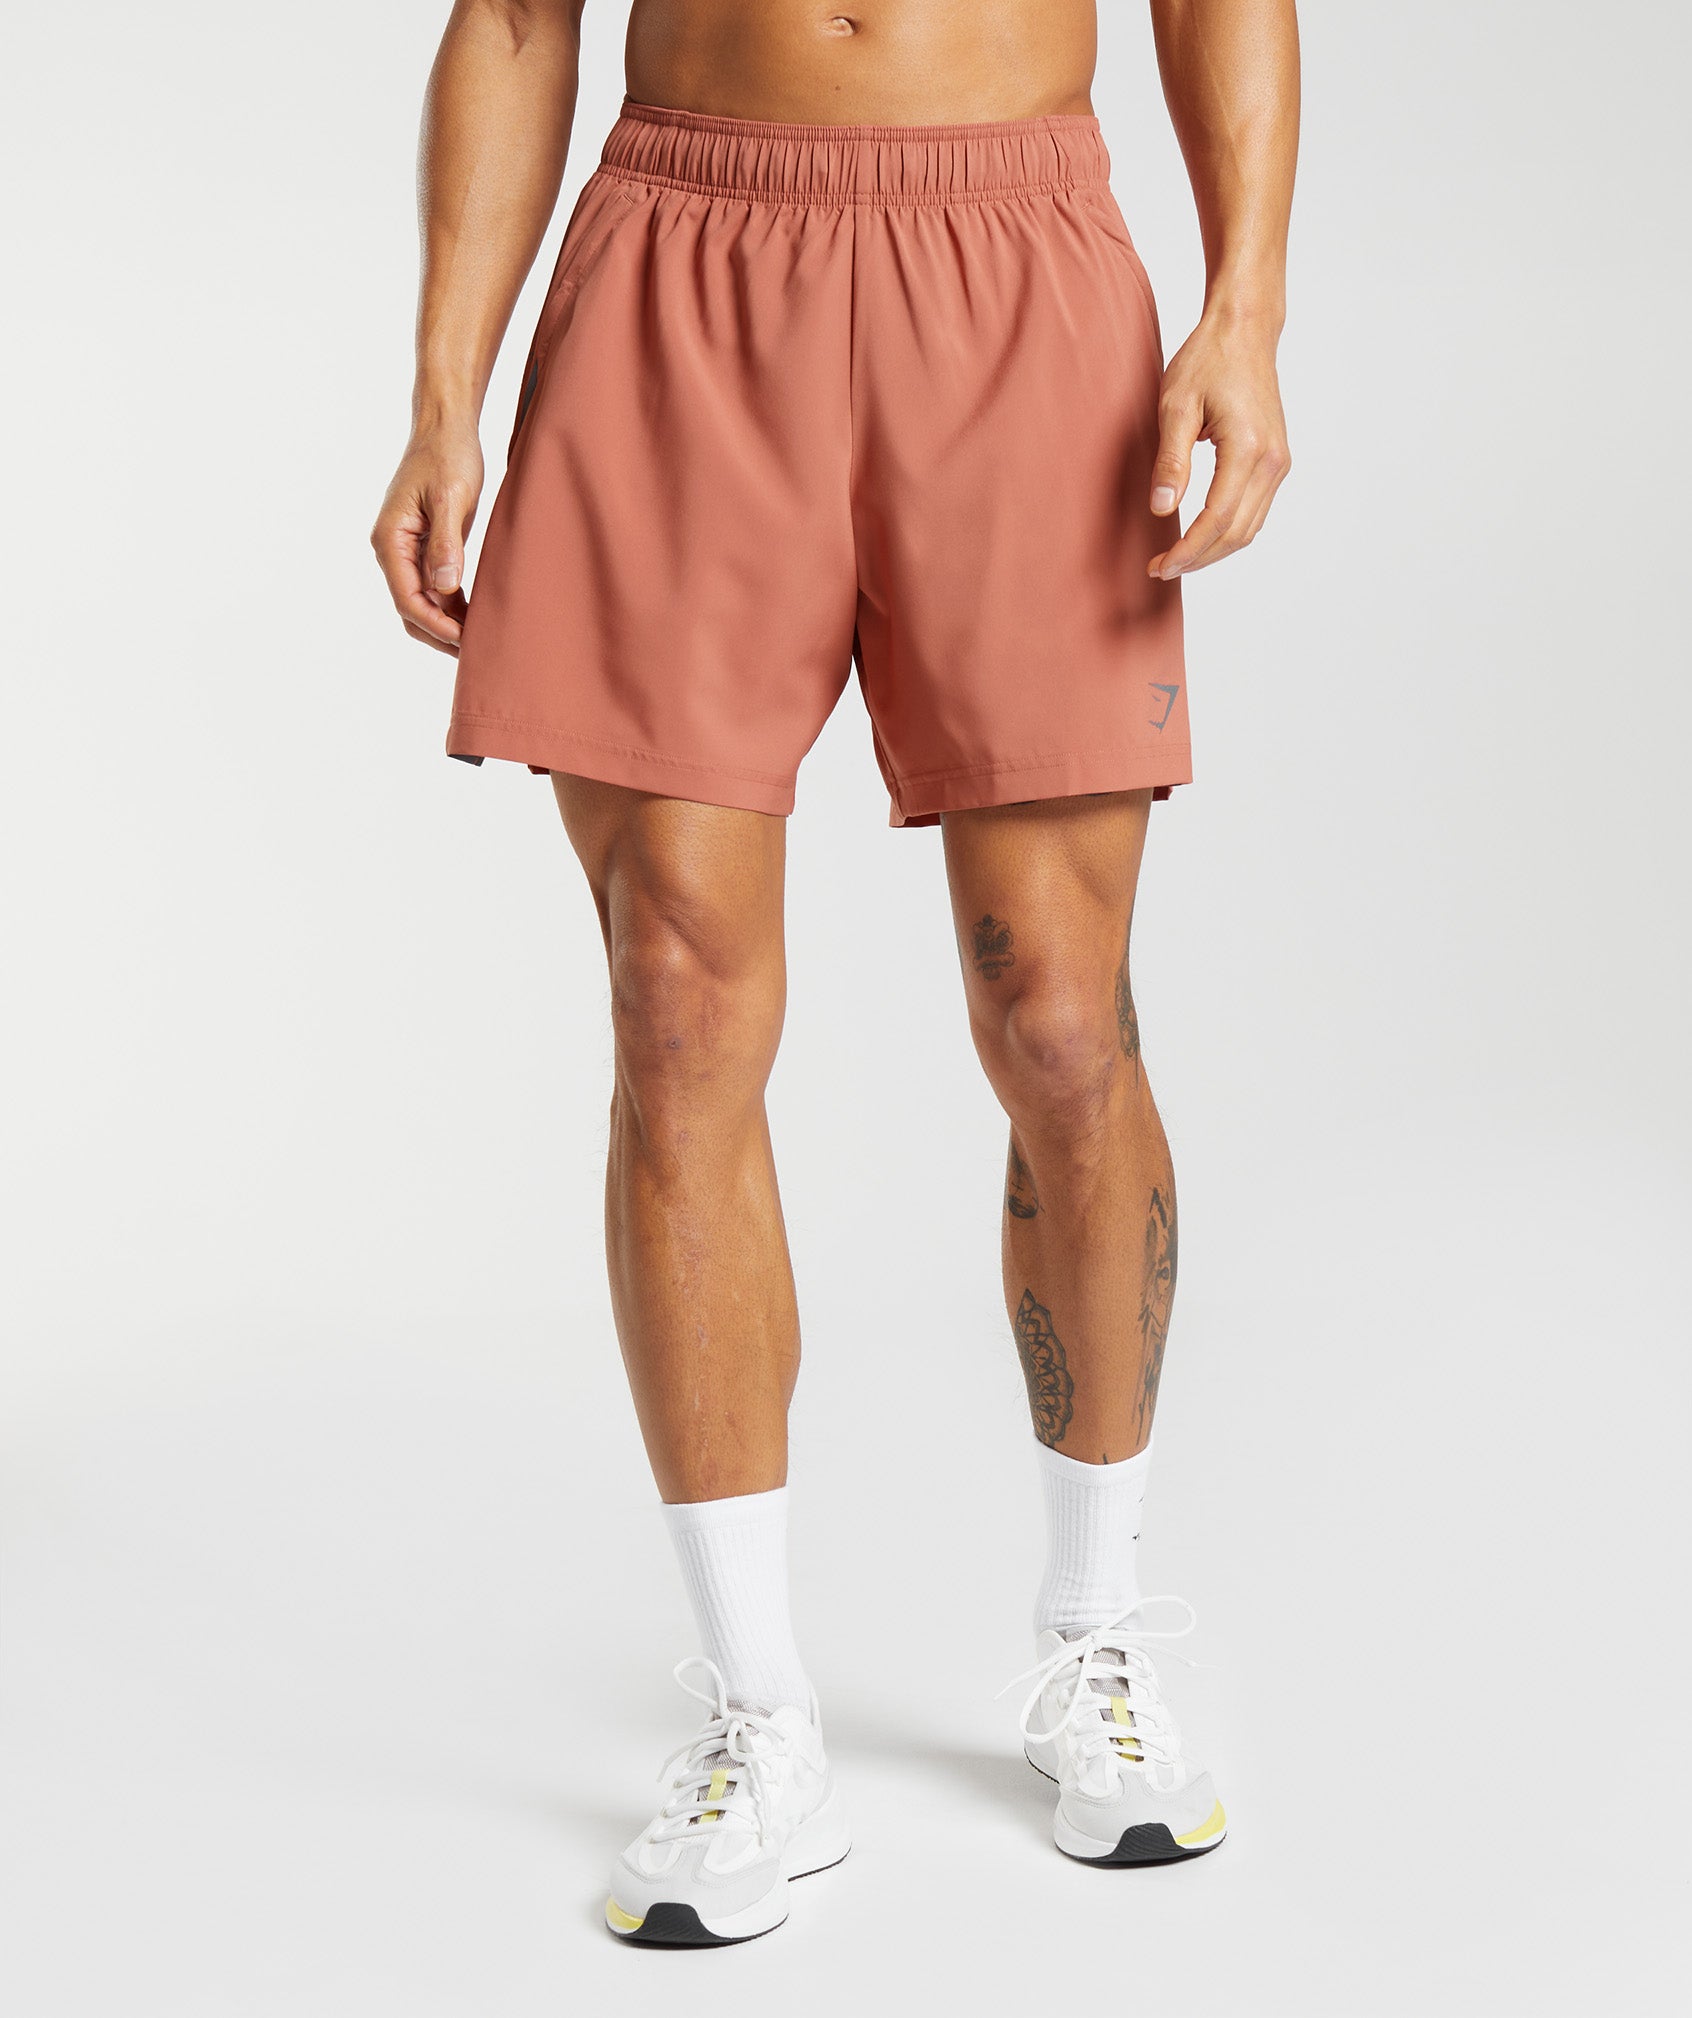 Athletic Men's Shorts Pink - KAP7 International